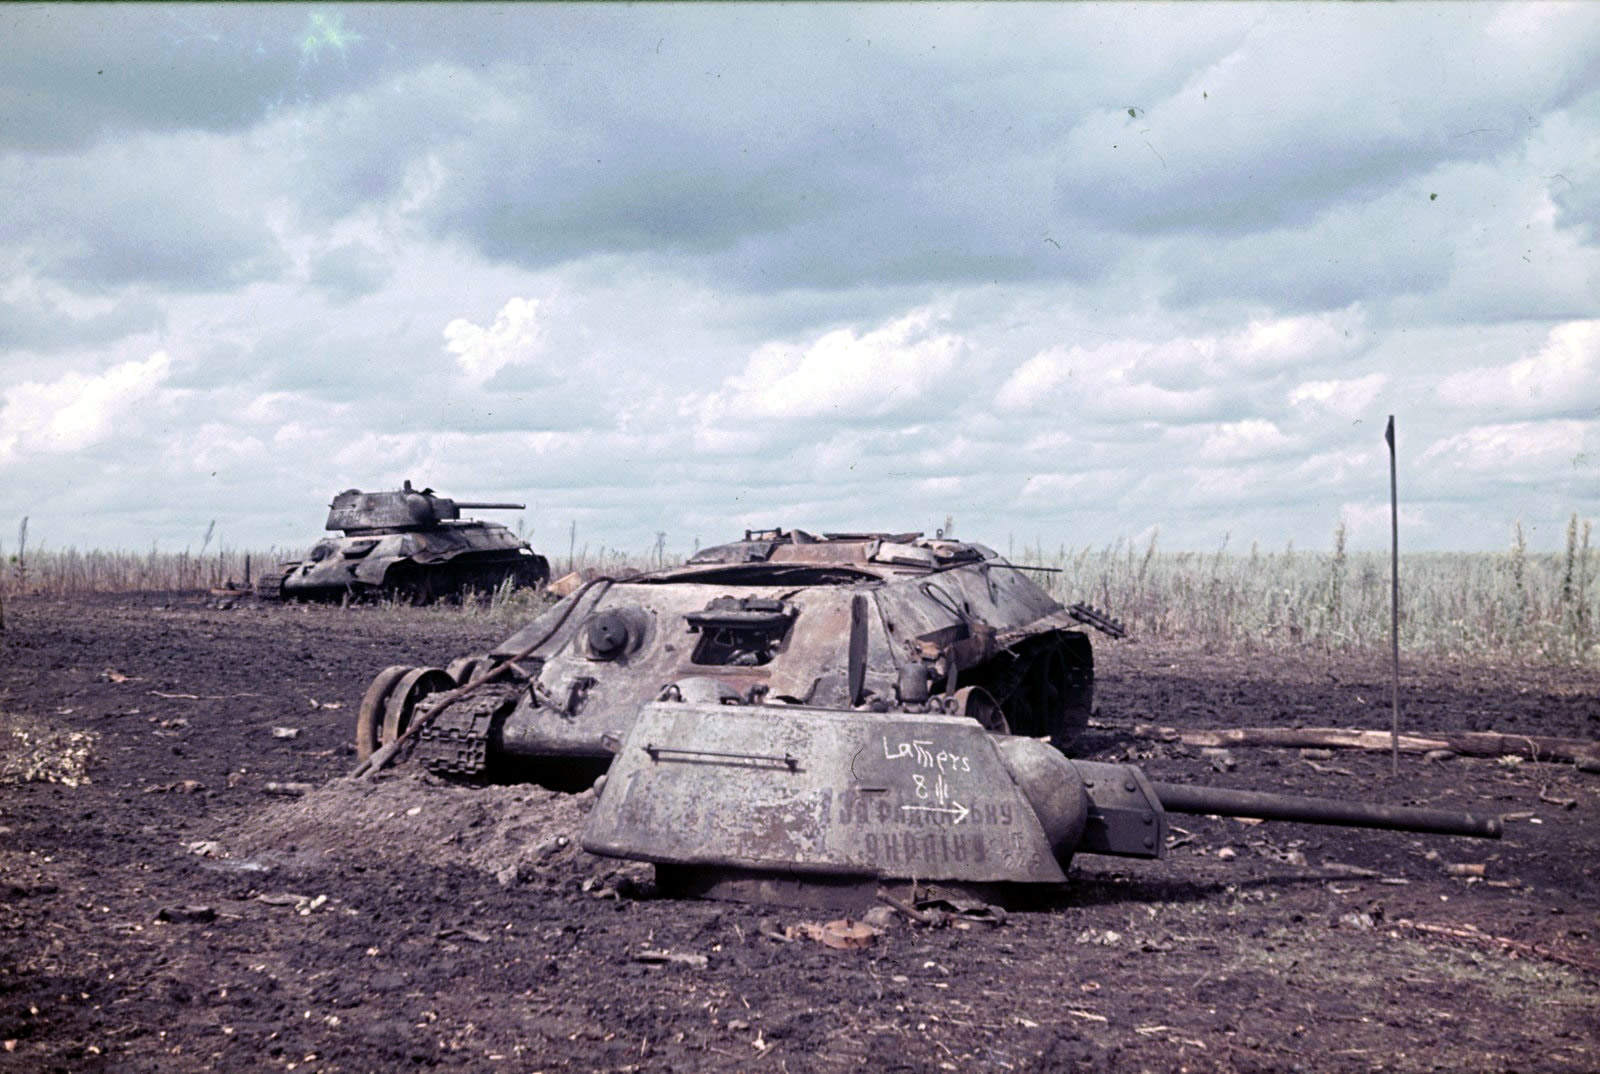 Немецкие танки после